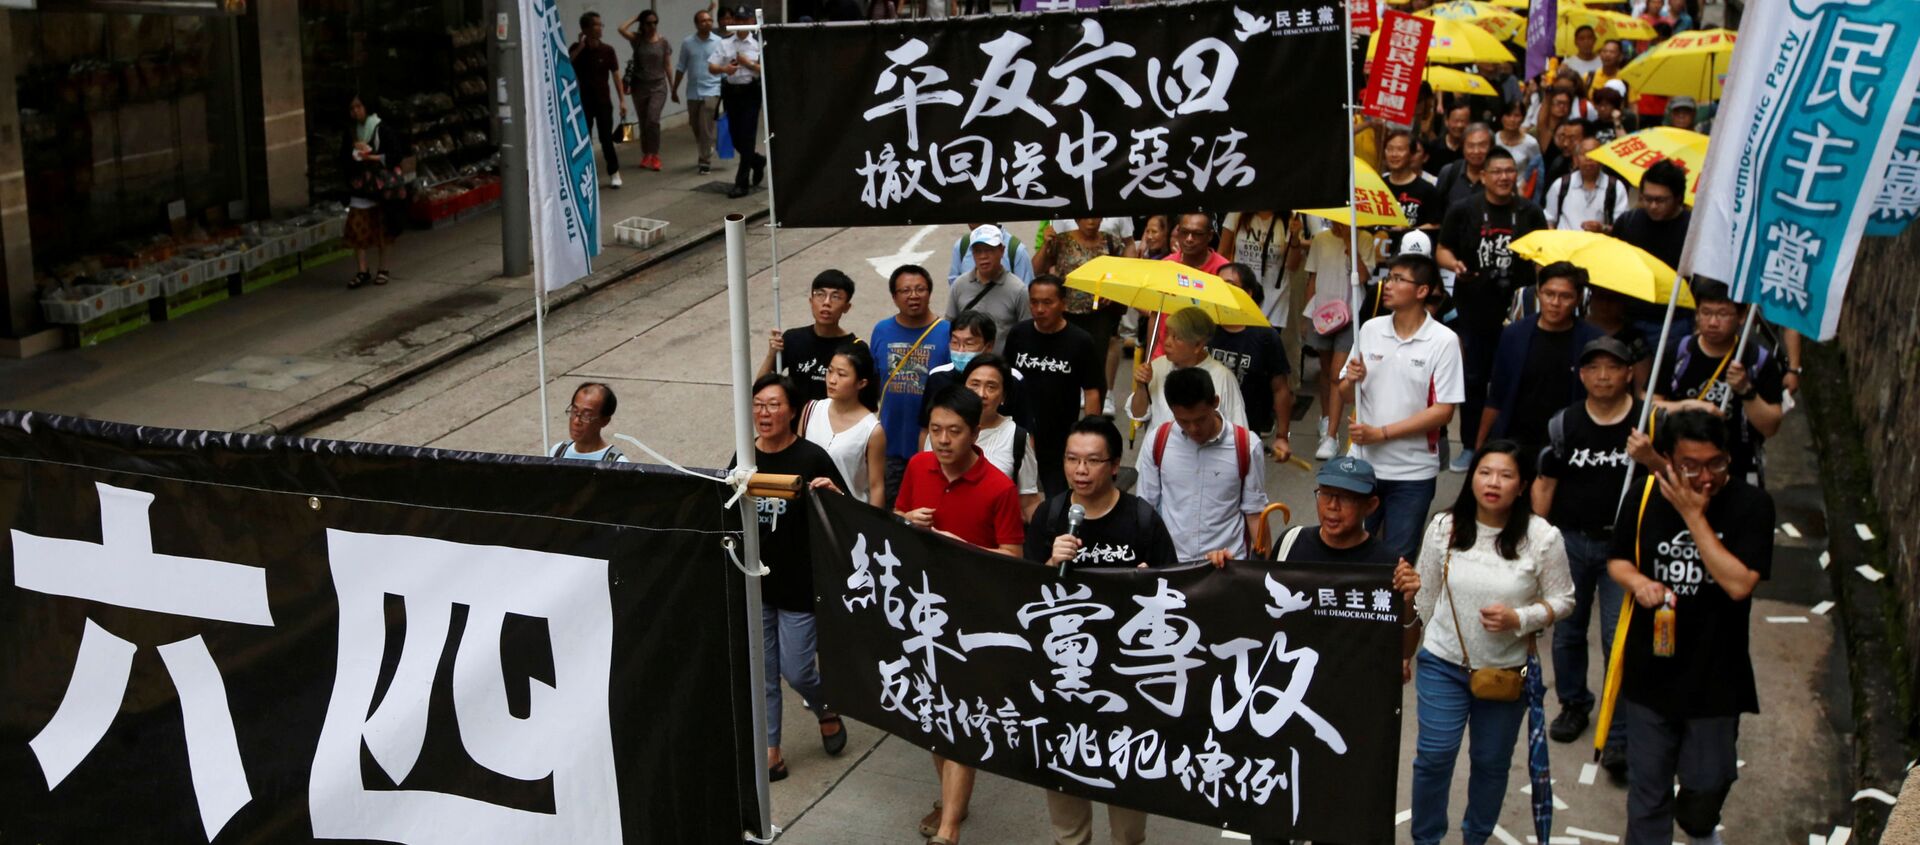  Çin Hong Kong'da Tiananmen olayları protesto edildi  - Sputnik Türkiye, 1920, 26.05.2019